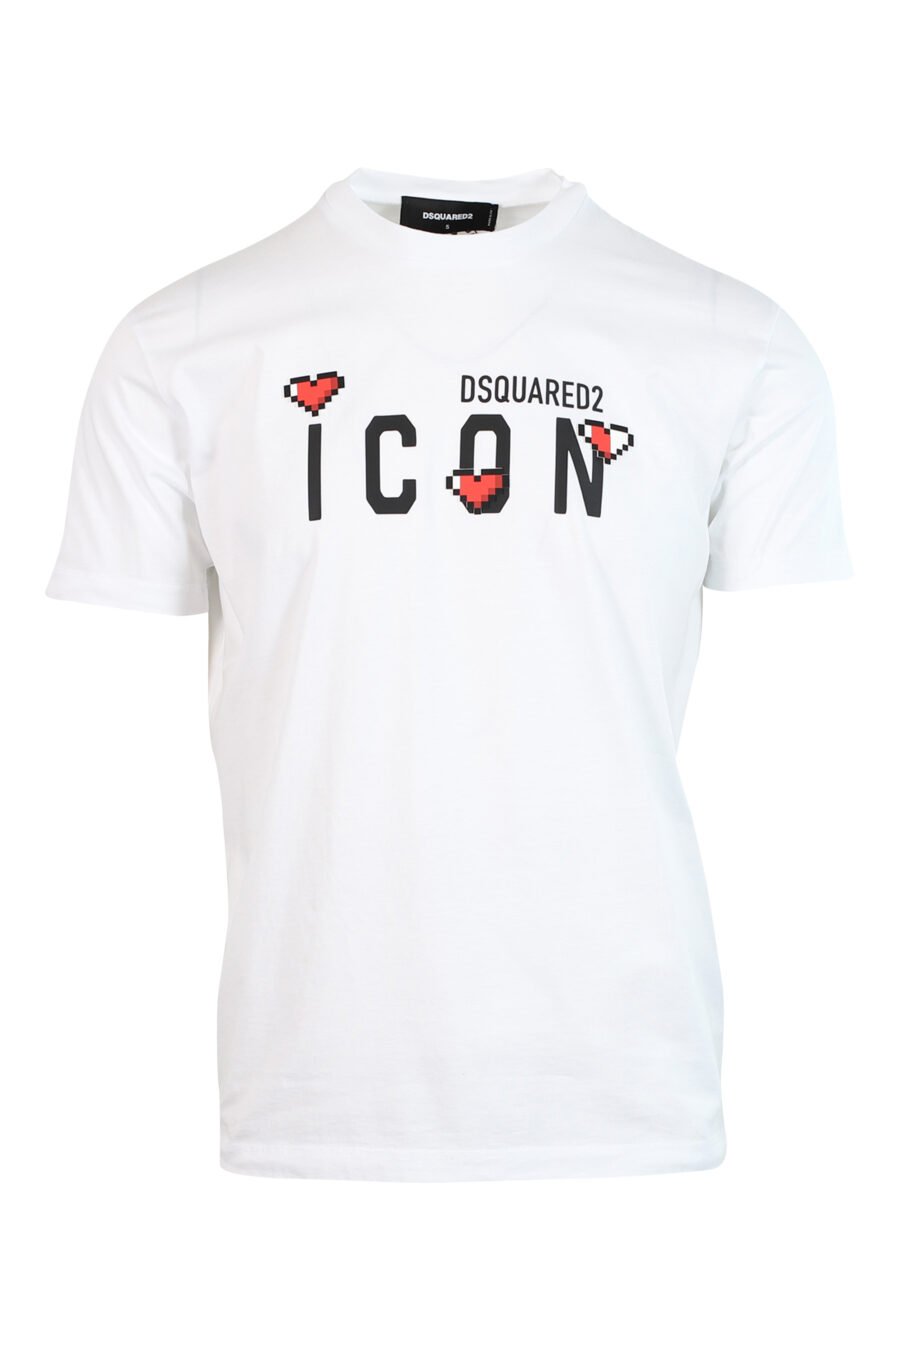 Weißes T-Shirt mit Maxilogo "Icon Herz Pixel" - 8052134980842